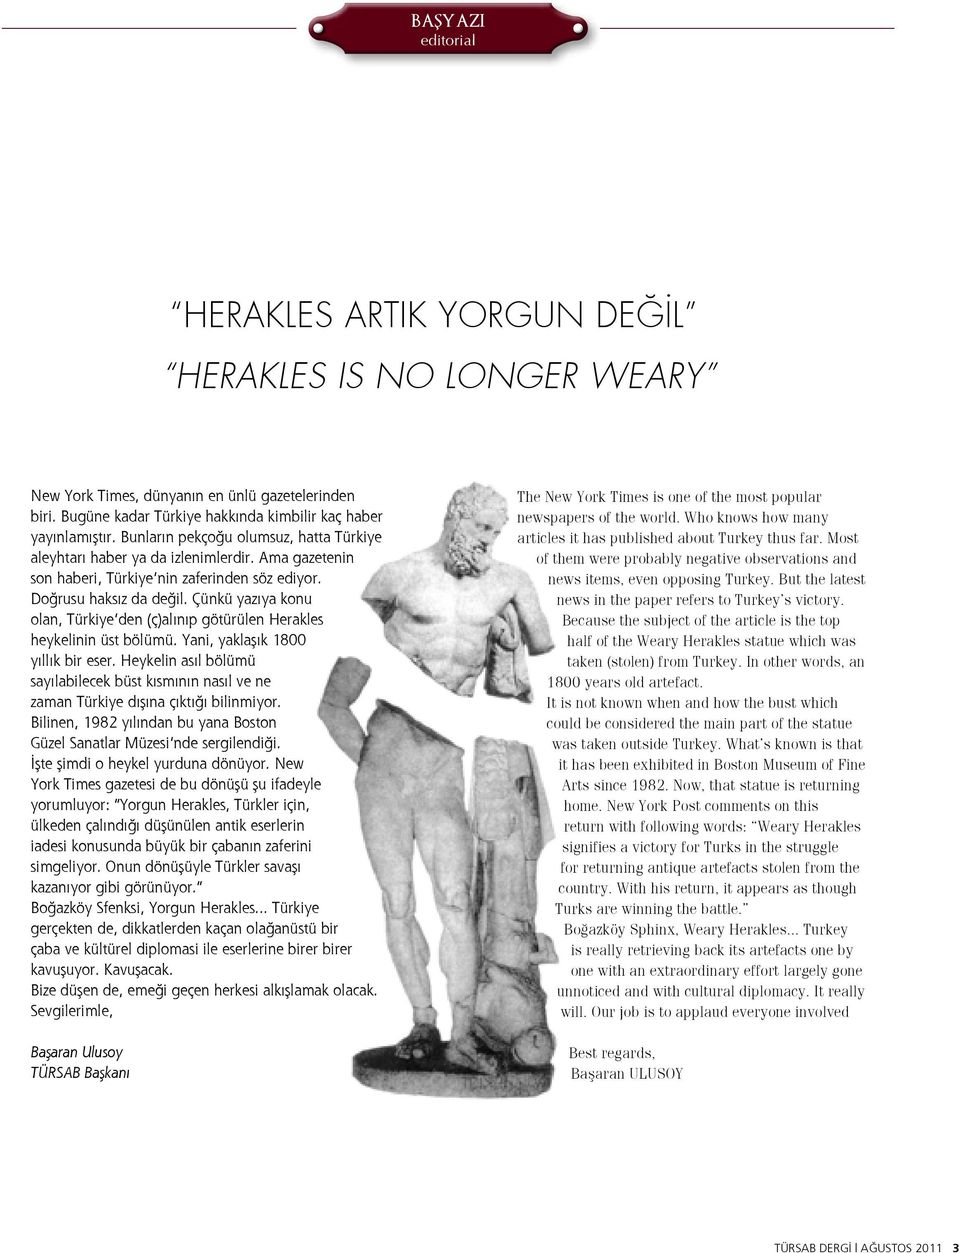 Çünkü yazıya konu olan, Türkiye den (ç)alınıp götürülen Herakles heykelinin üst bölümü. Yani, yaklaşık 1800 yıllık bir eser.